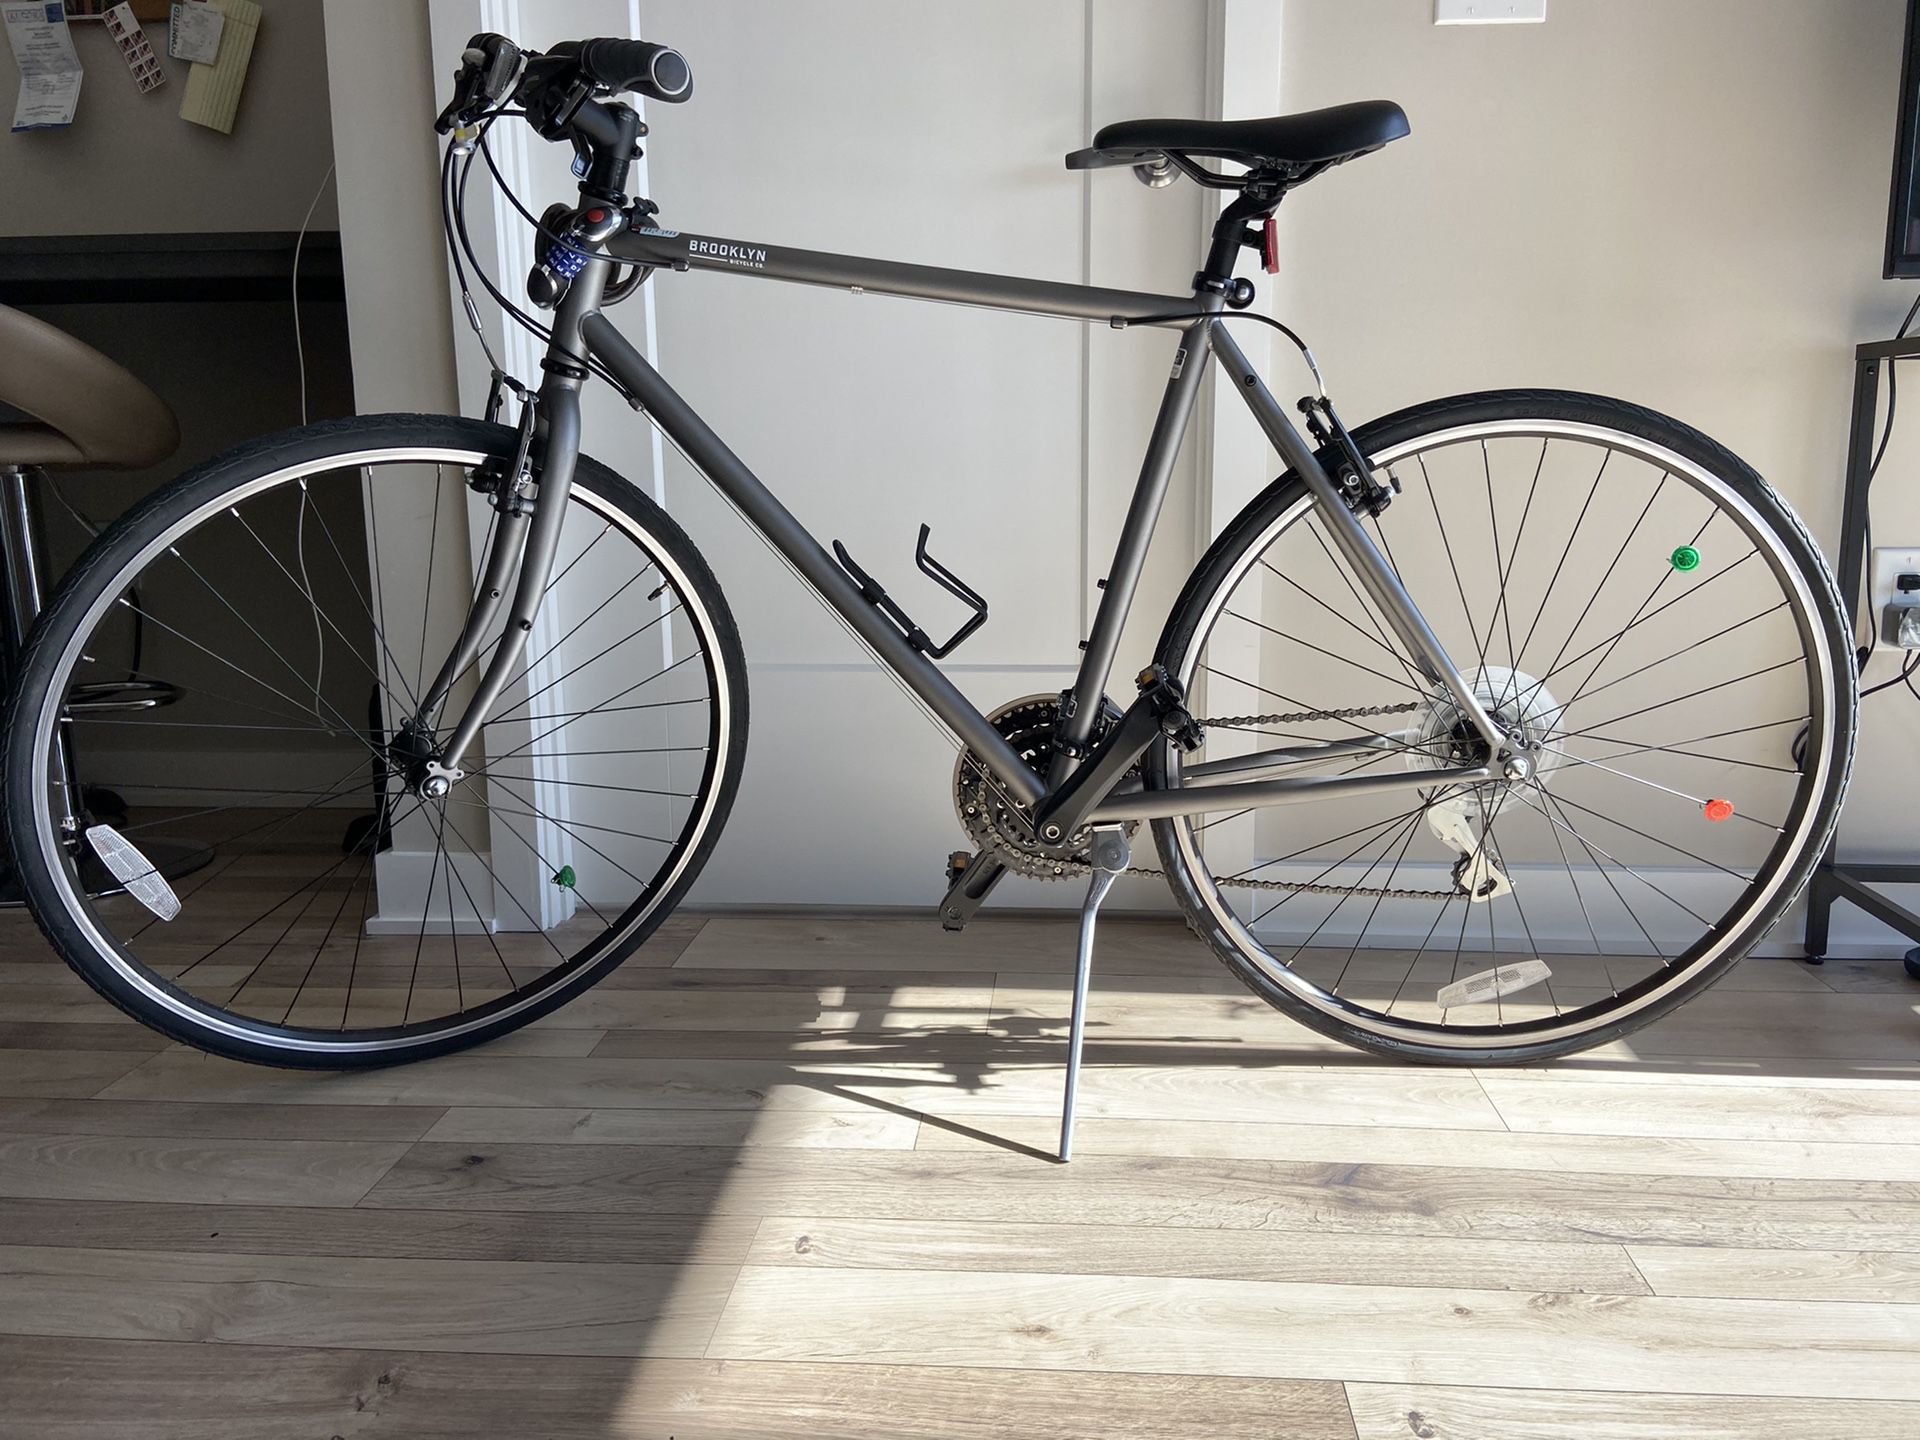 New 21’ Brooklyn Hybrid bike for sale!